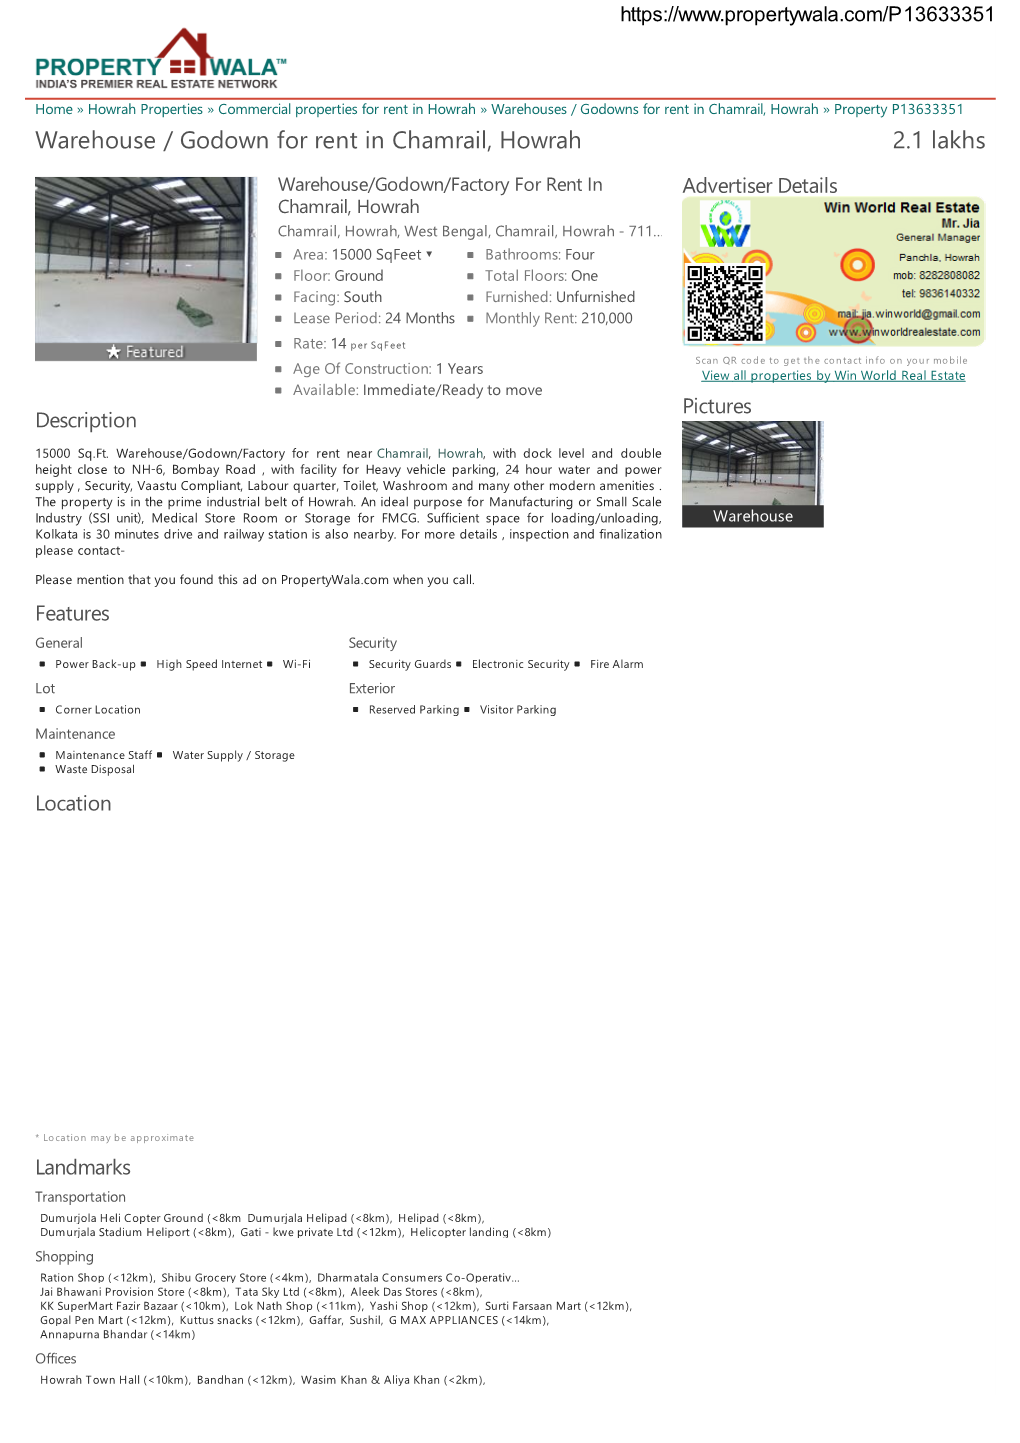 Warehouse / Godown for Rent in Chamrail, Howrah (P13633351